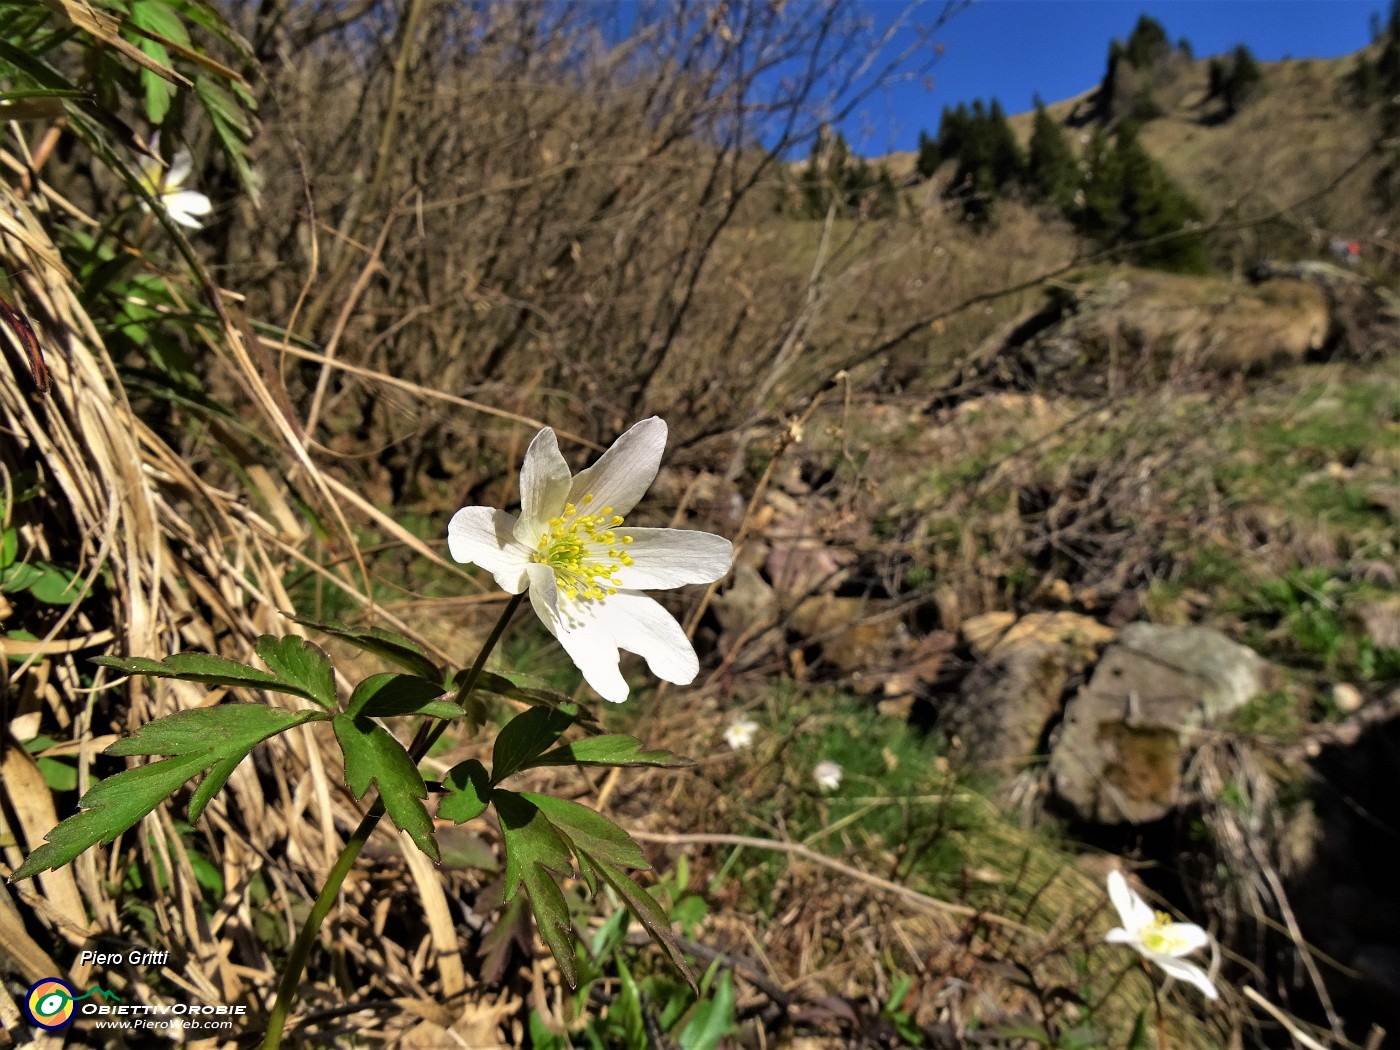 09 Anemoides nemorosa (Anemone dei boschi) ...primavera anche alle Baite di Mezzeno!.JPG